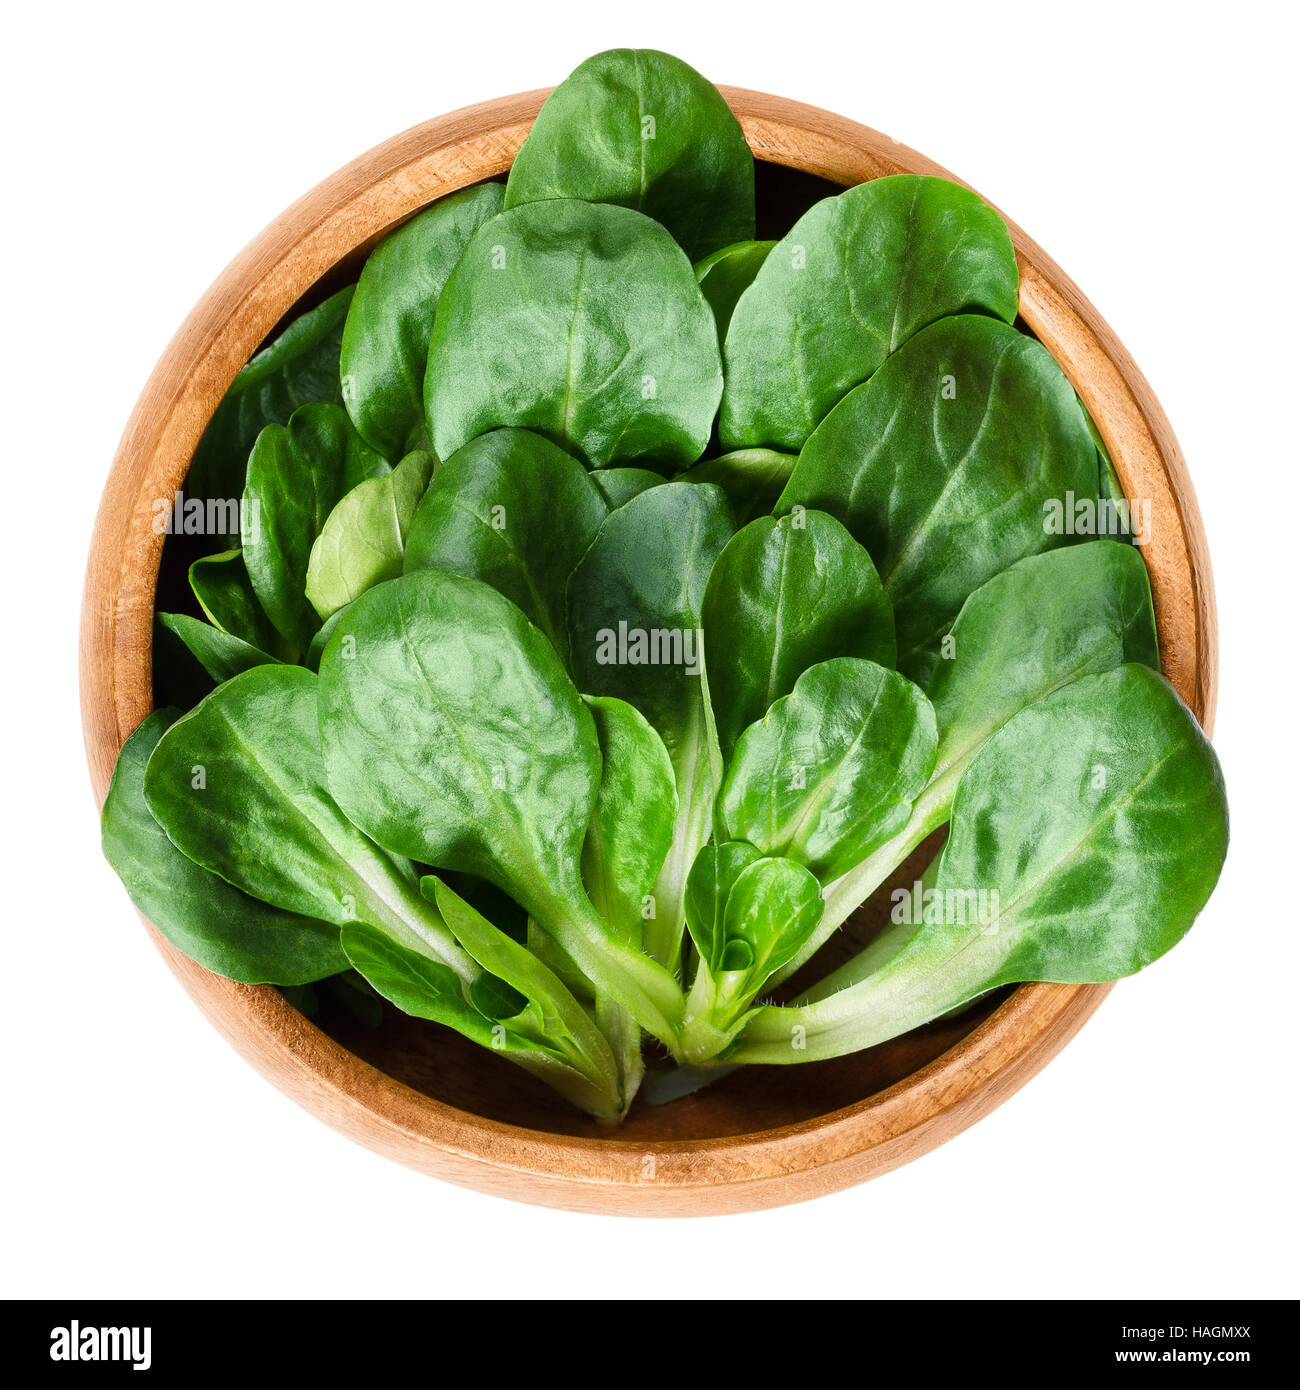 Insalata verde nella ciotola con il server per insalata Foto stock - Alamy